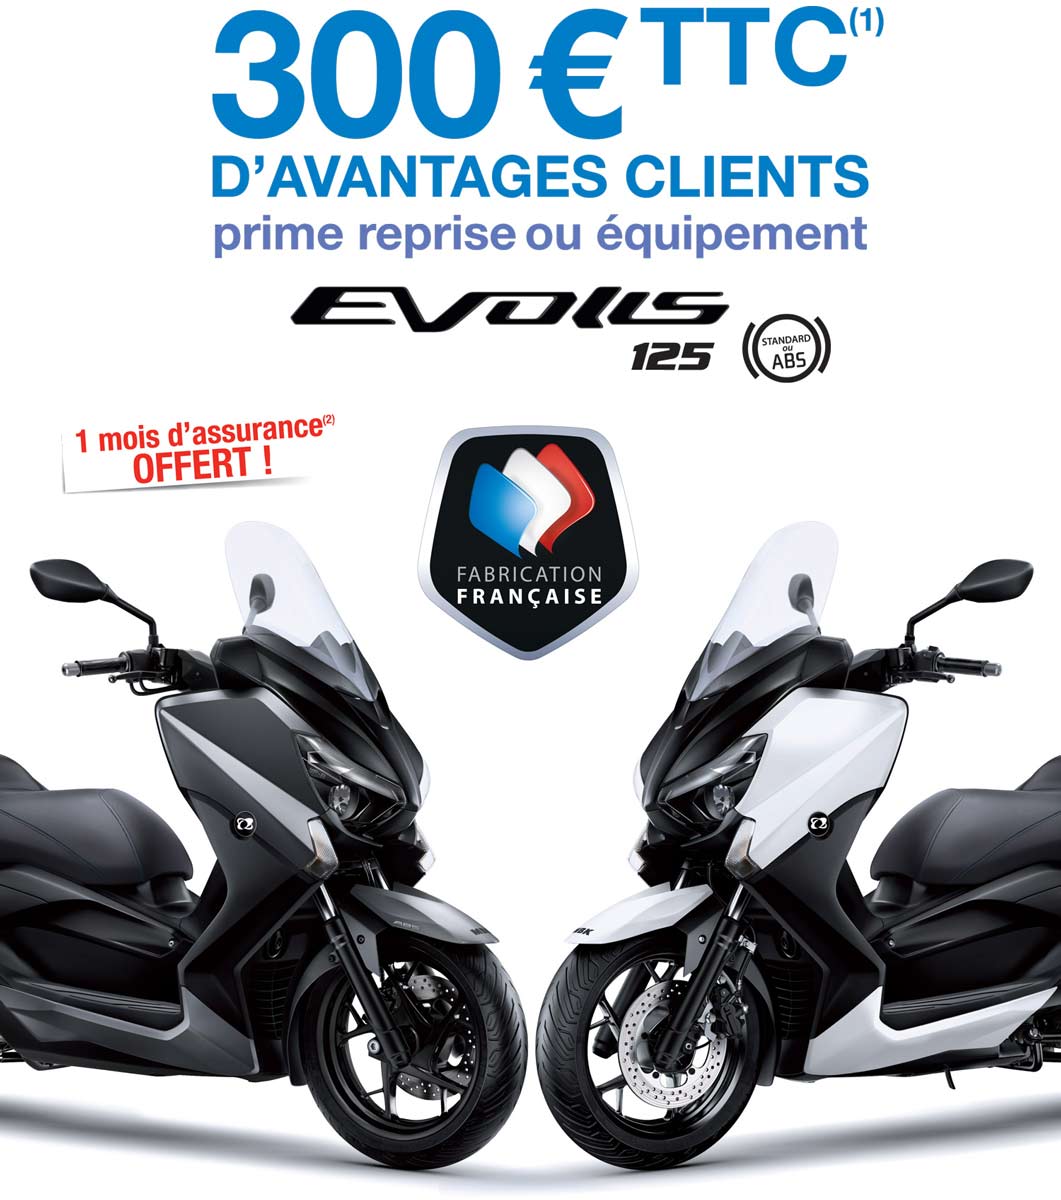 300€ d'avantages clients sur le scooter MBK Evolis 125 en concession